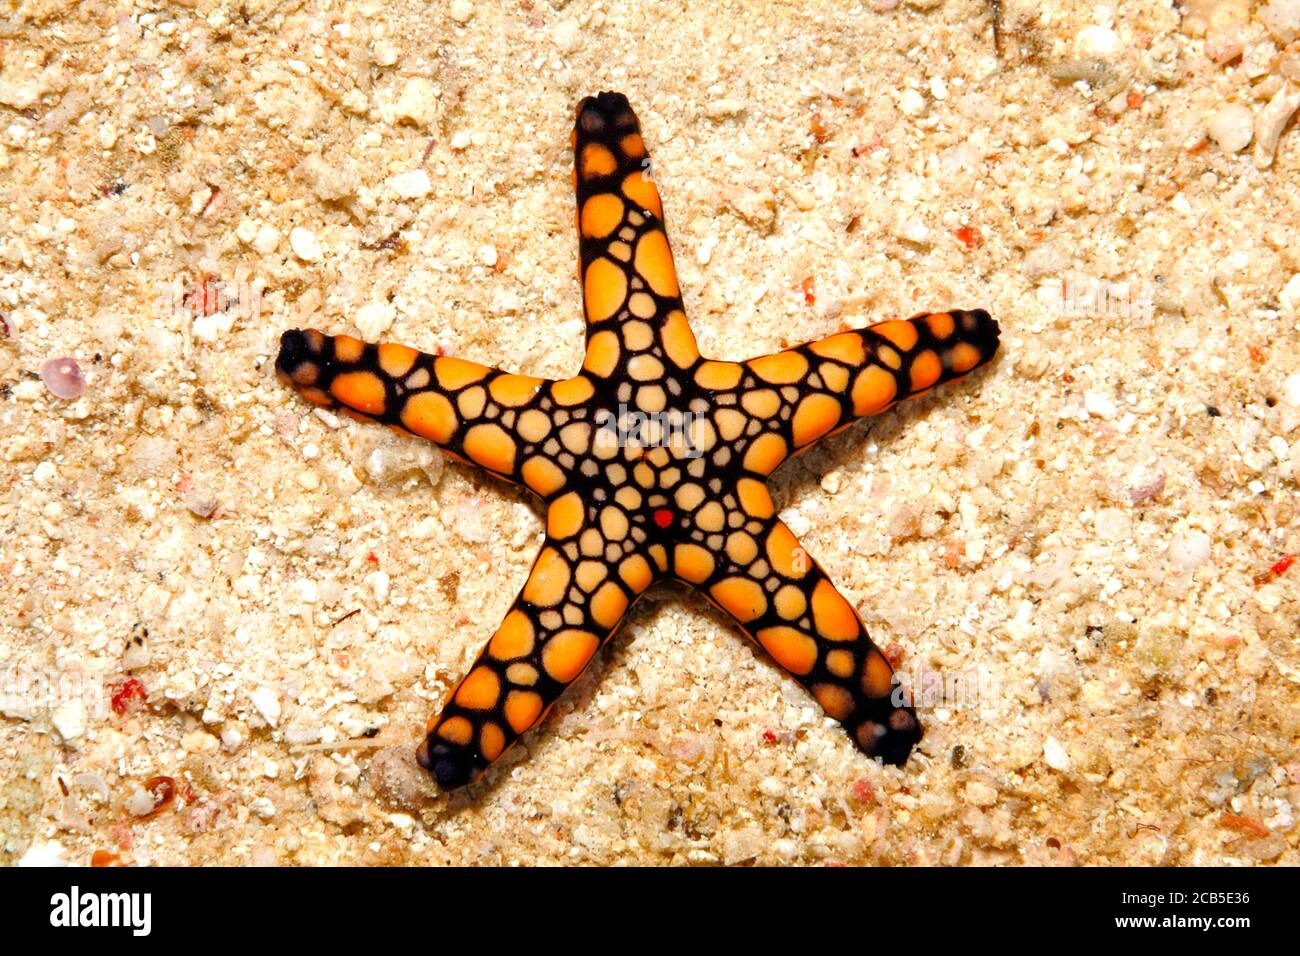 Estrella de mar o pez estrella de mar, Fromia sp. Parece ser una especie no descrita. Uepi, Islas Salomón. Mar de Salomón, Océano Pacífico Foto de stock